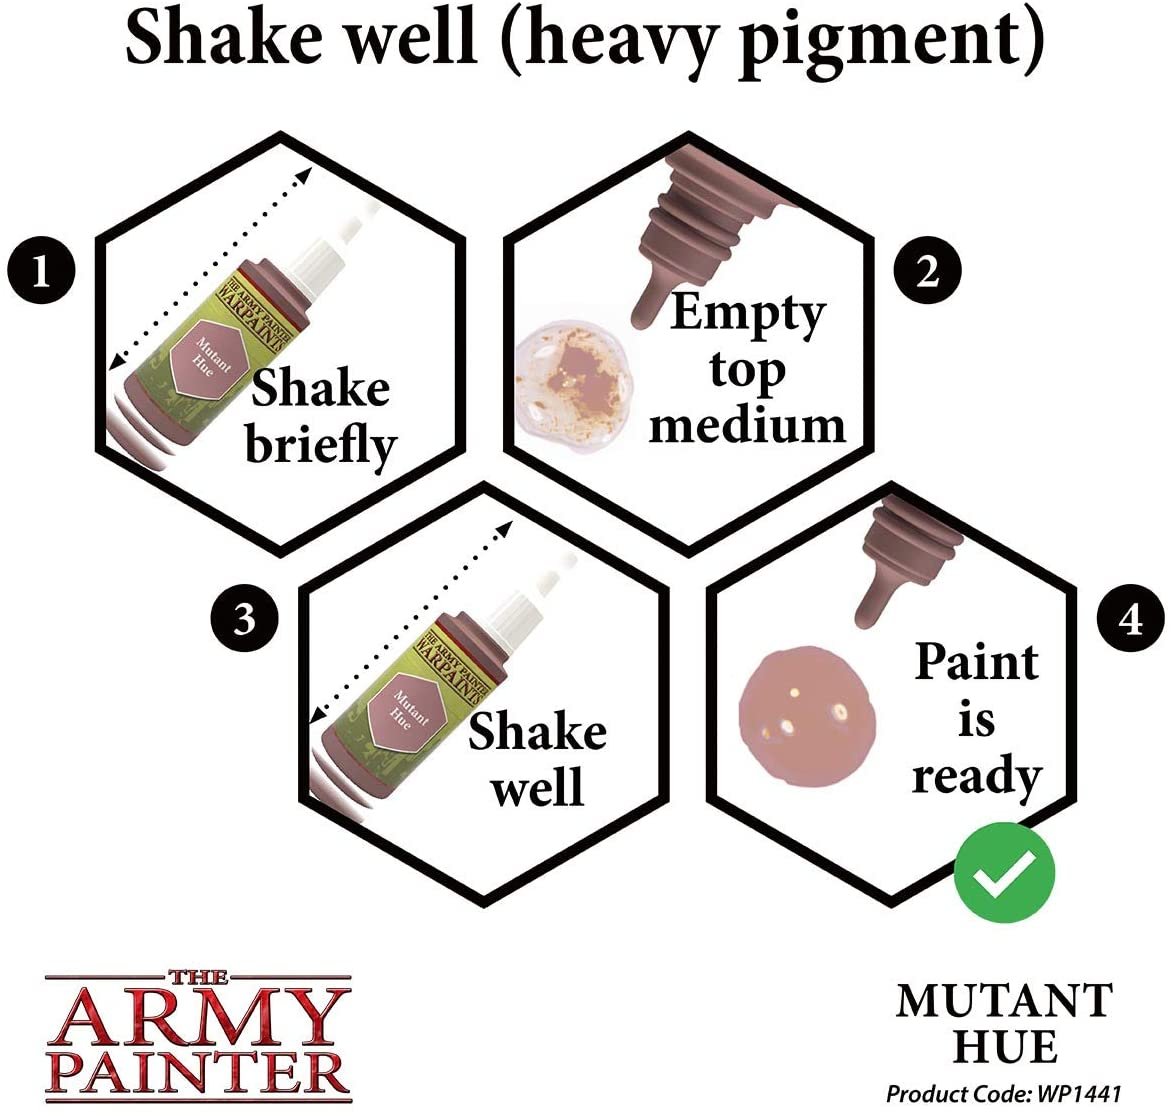 The Army Painter - Warpaints: Mutant Hue (18ml/0.6oz)